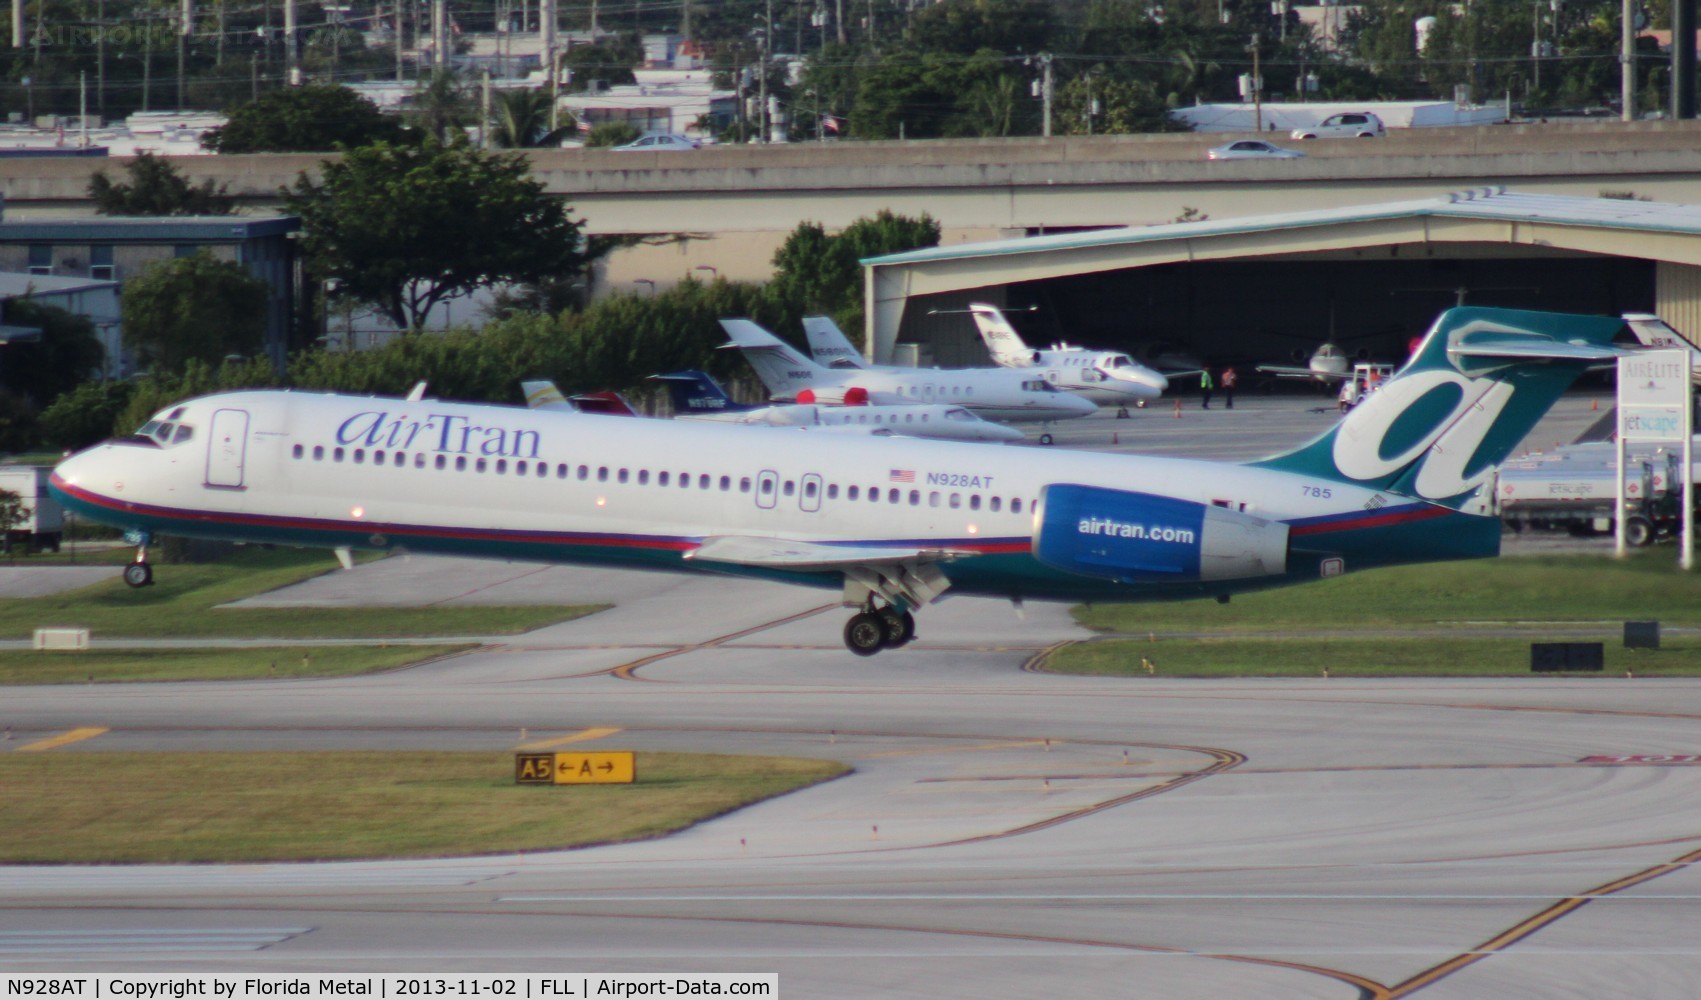 N928AT, 2000 Boeing 717-200 C/N 55076, Air Tran 717